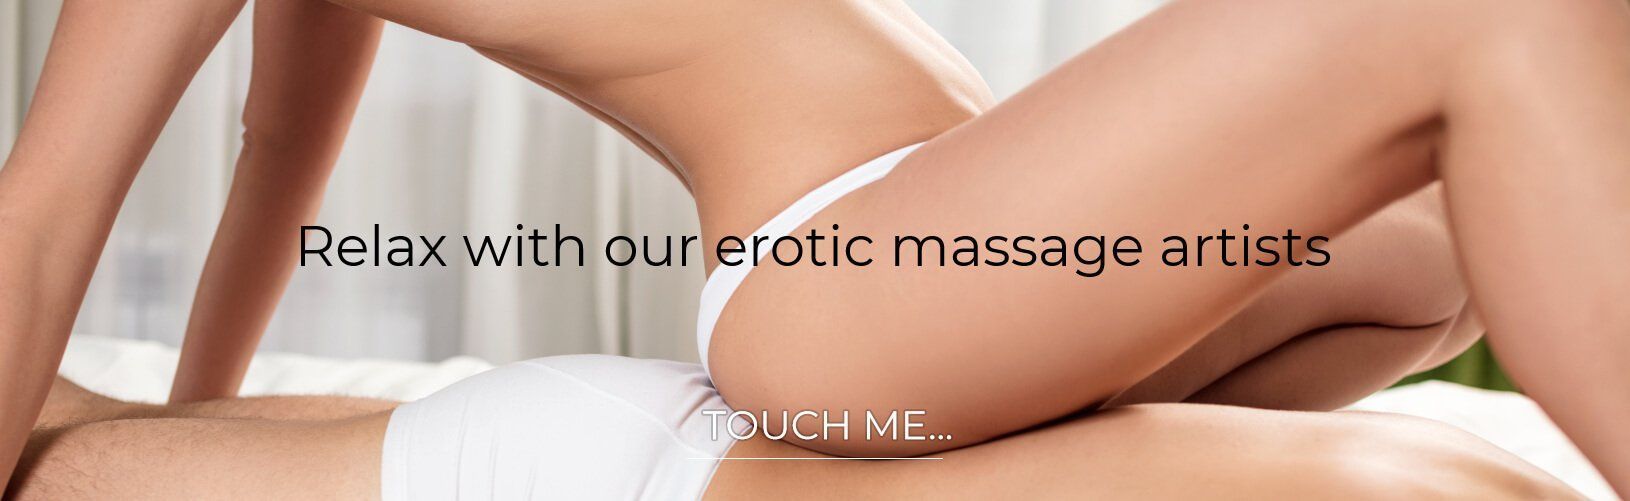 Bear reccomend Australia melbourne erotic massage